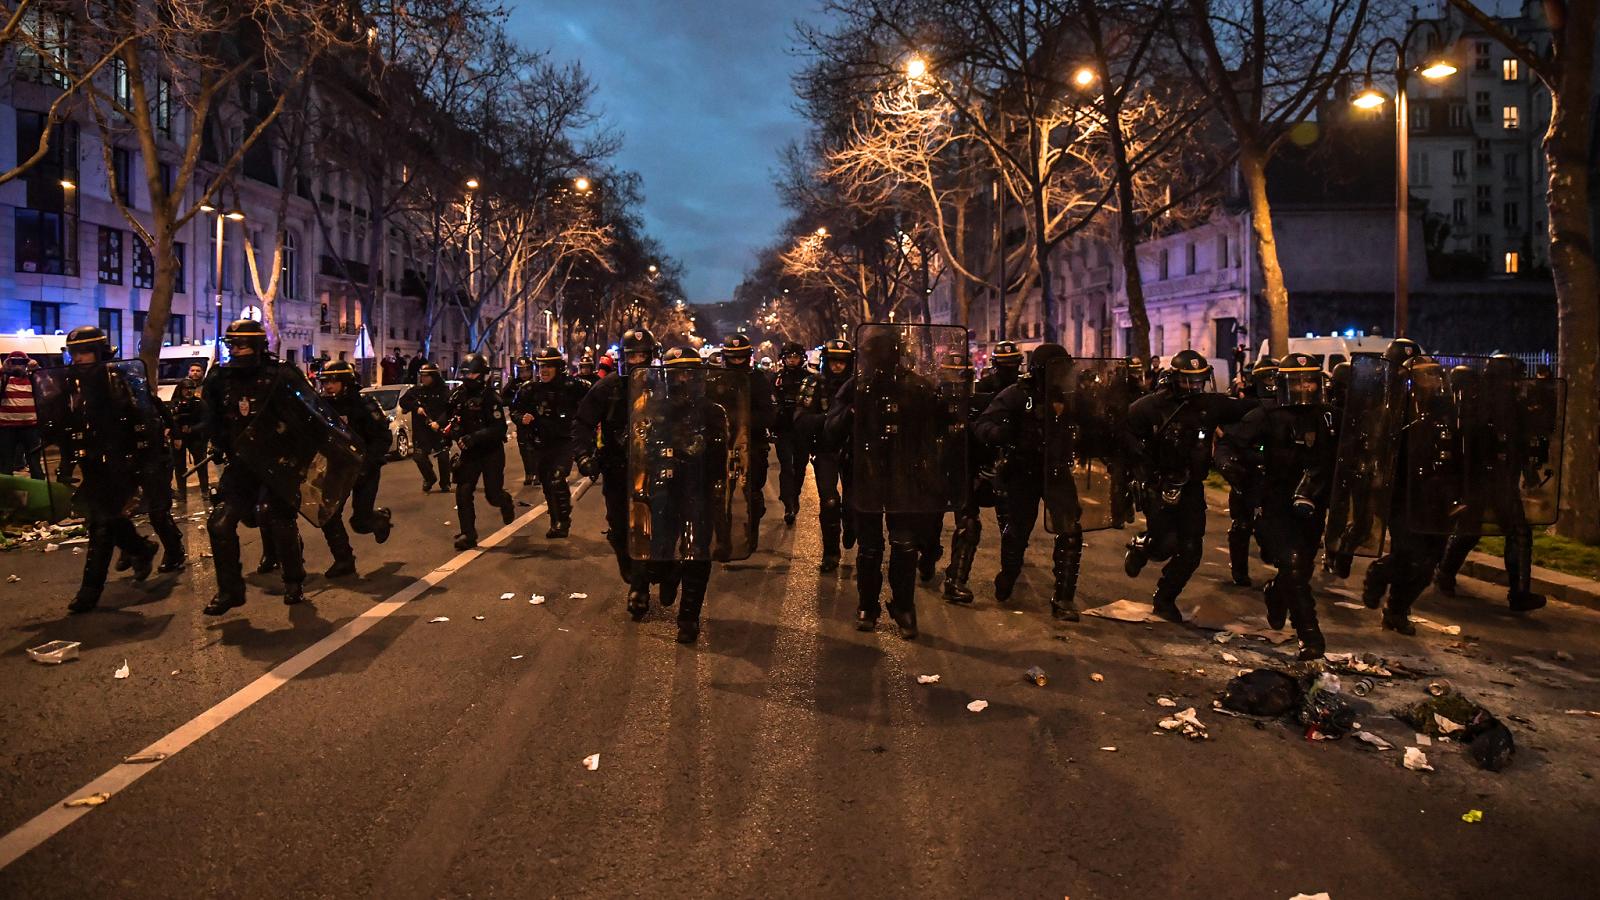 La riforma delle pensioni passa ed esplode la rabbia: 142 persone fermate a Parigi